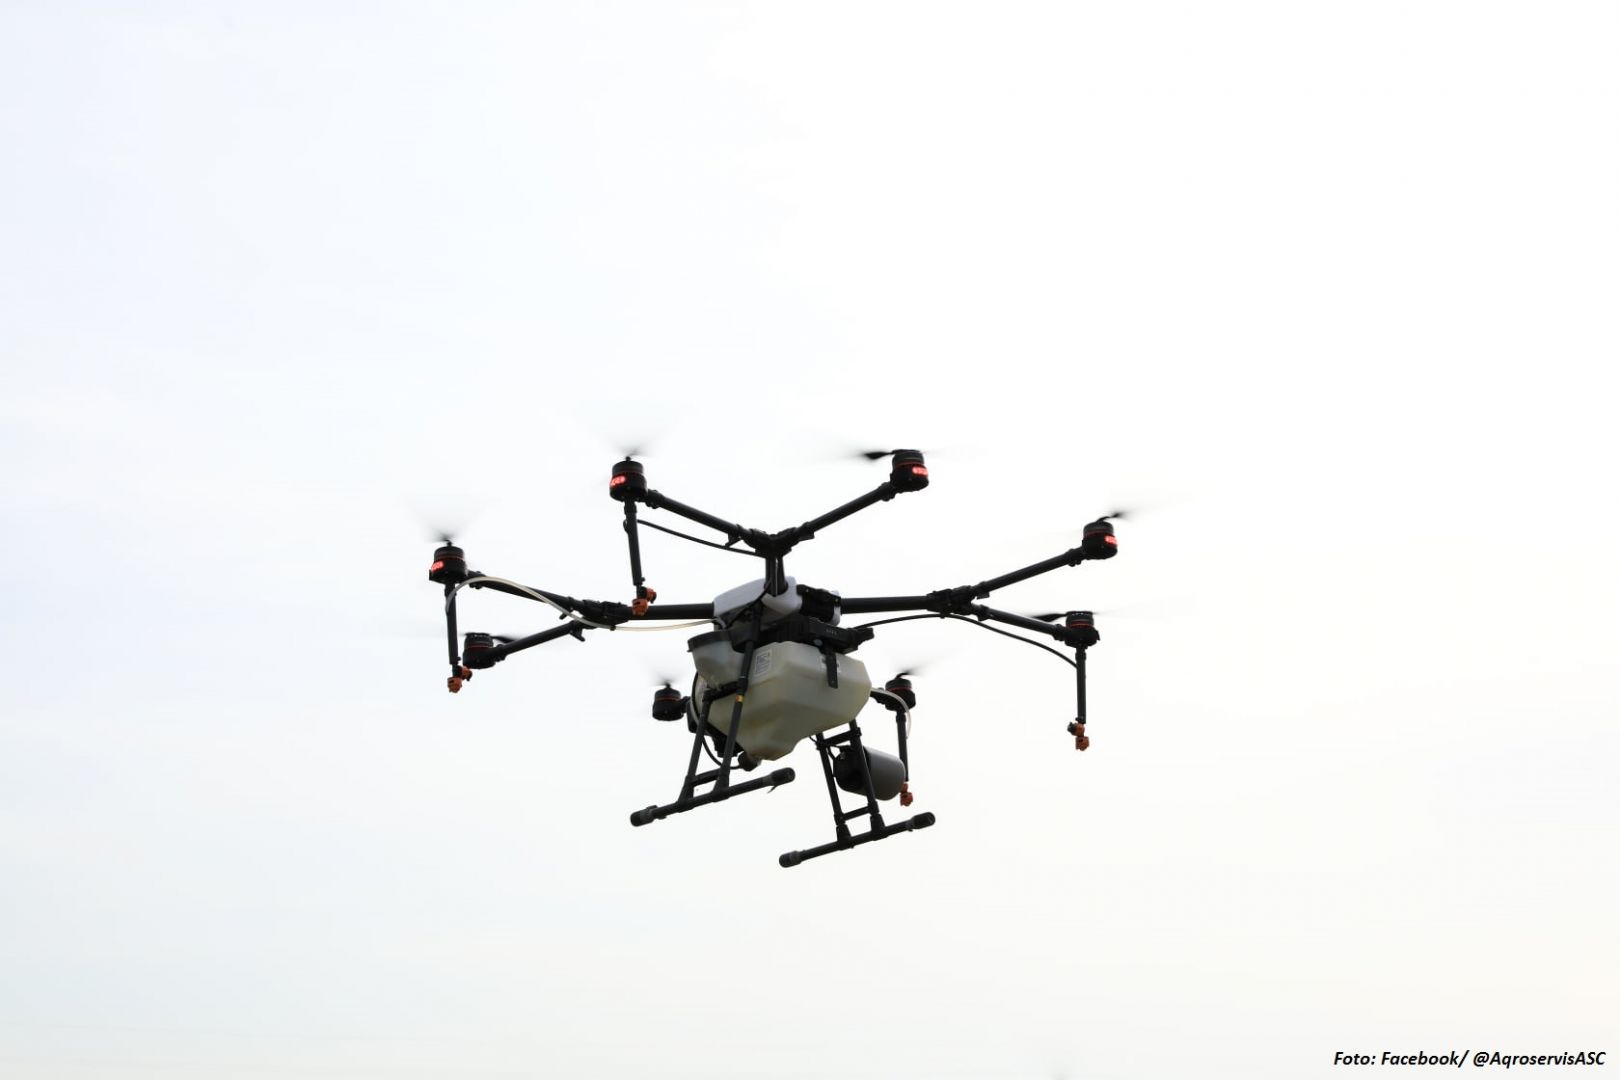 Armee von Kasachstan hat den UAV getestet, der in Kasachstan hergestellt wurde